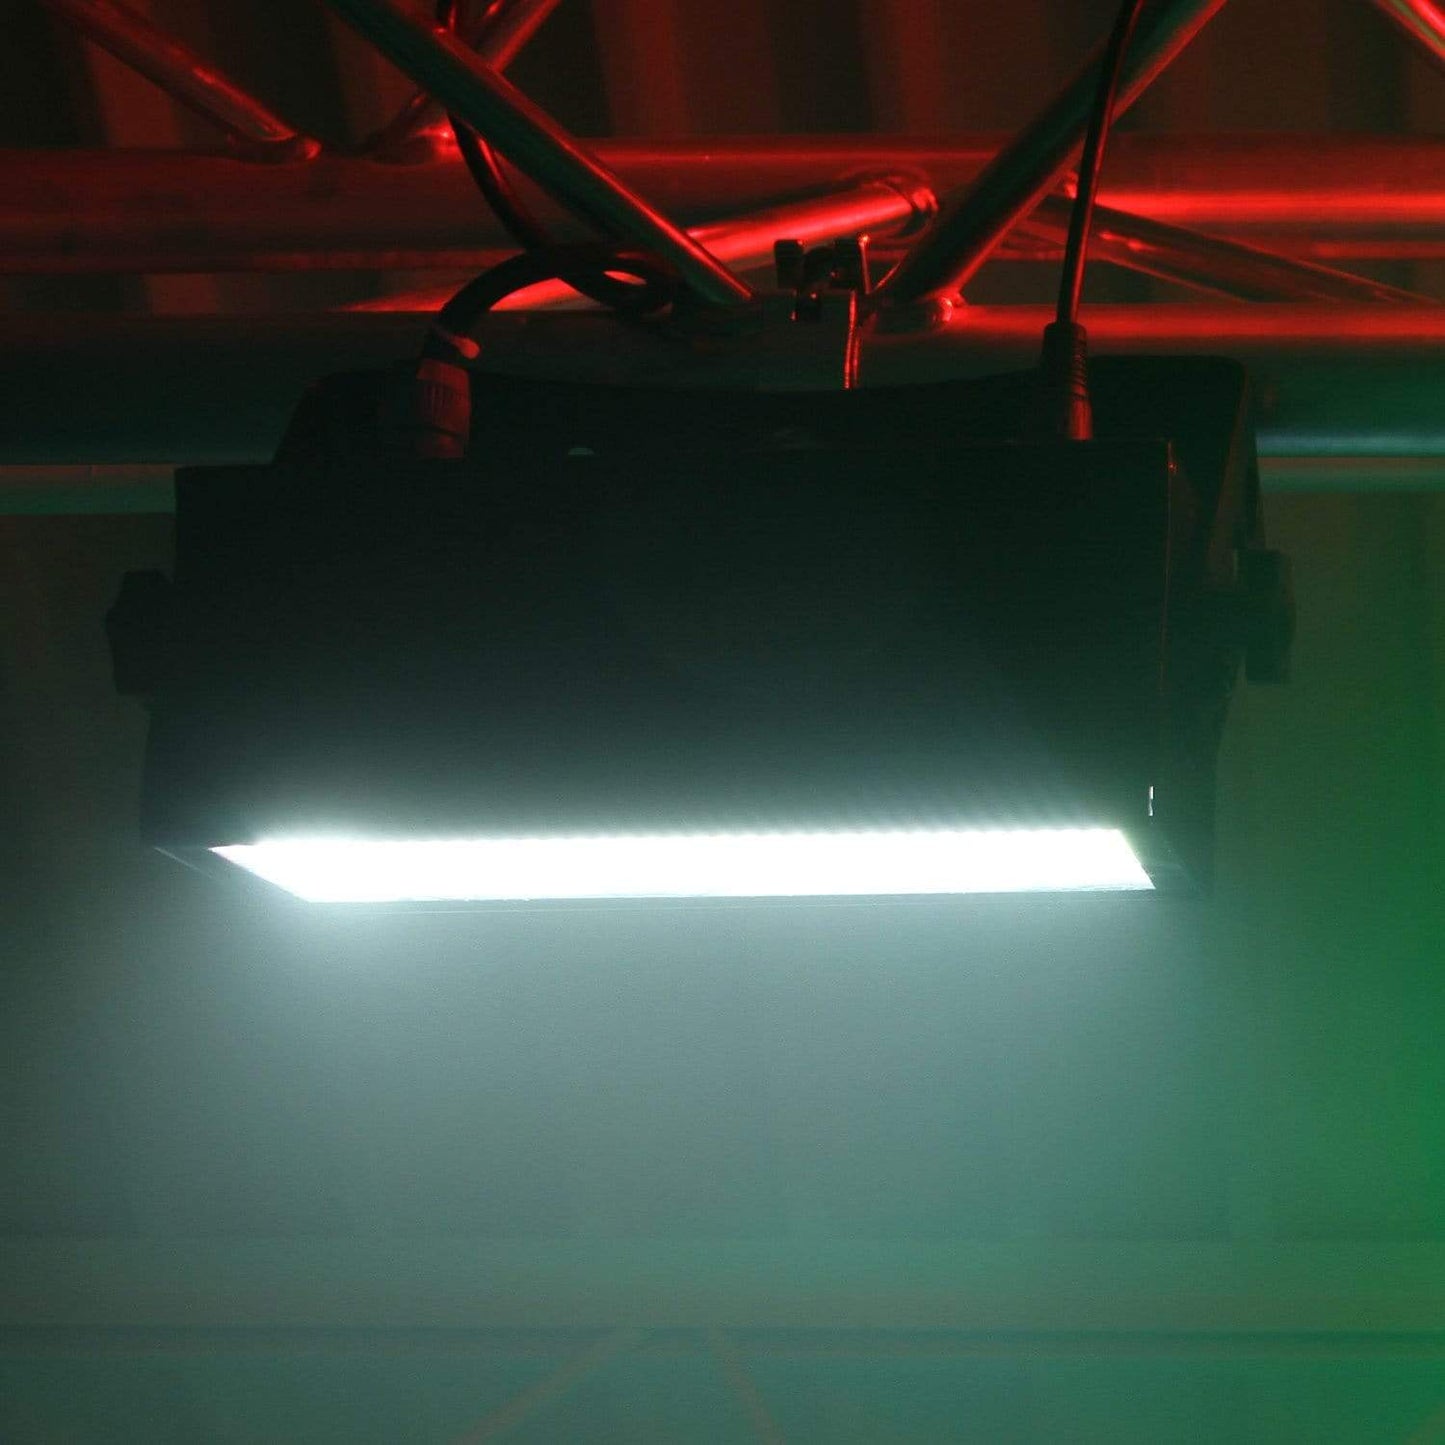 Mega Lite XS Strobe LED DMX Blinder Effects Light - PSSL ProSound and Stage Lighting